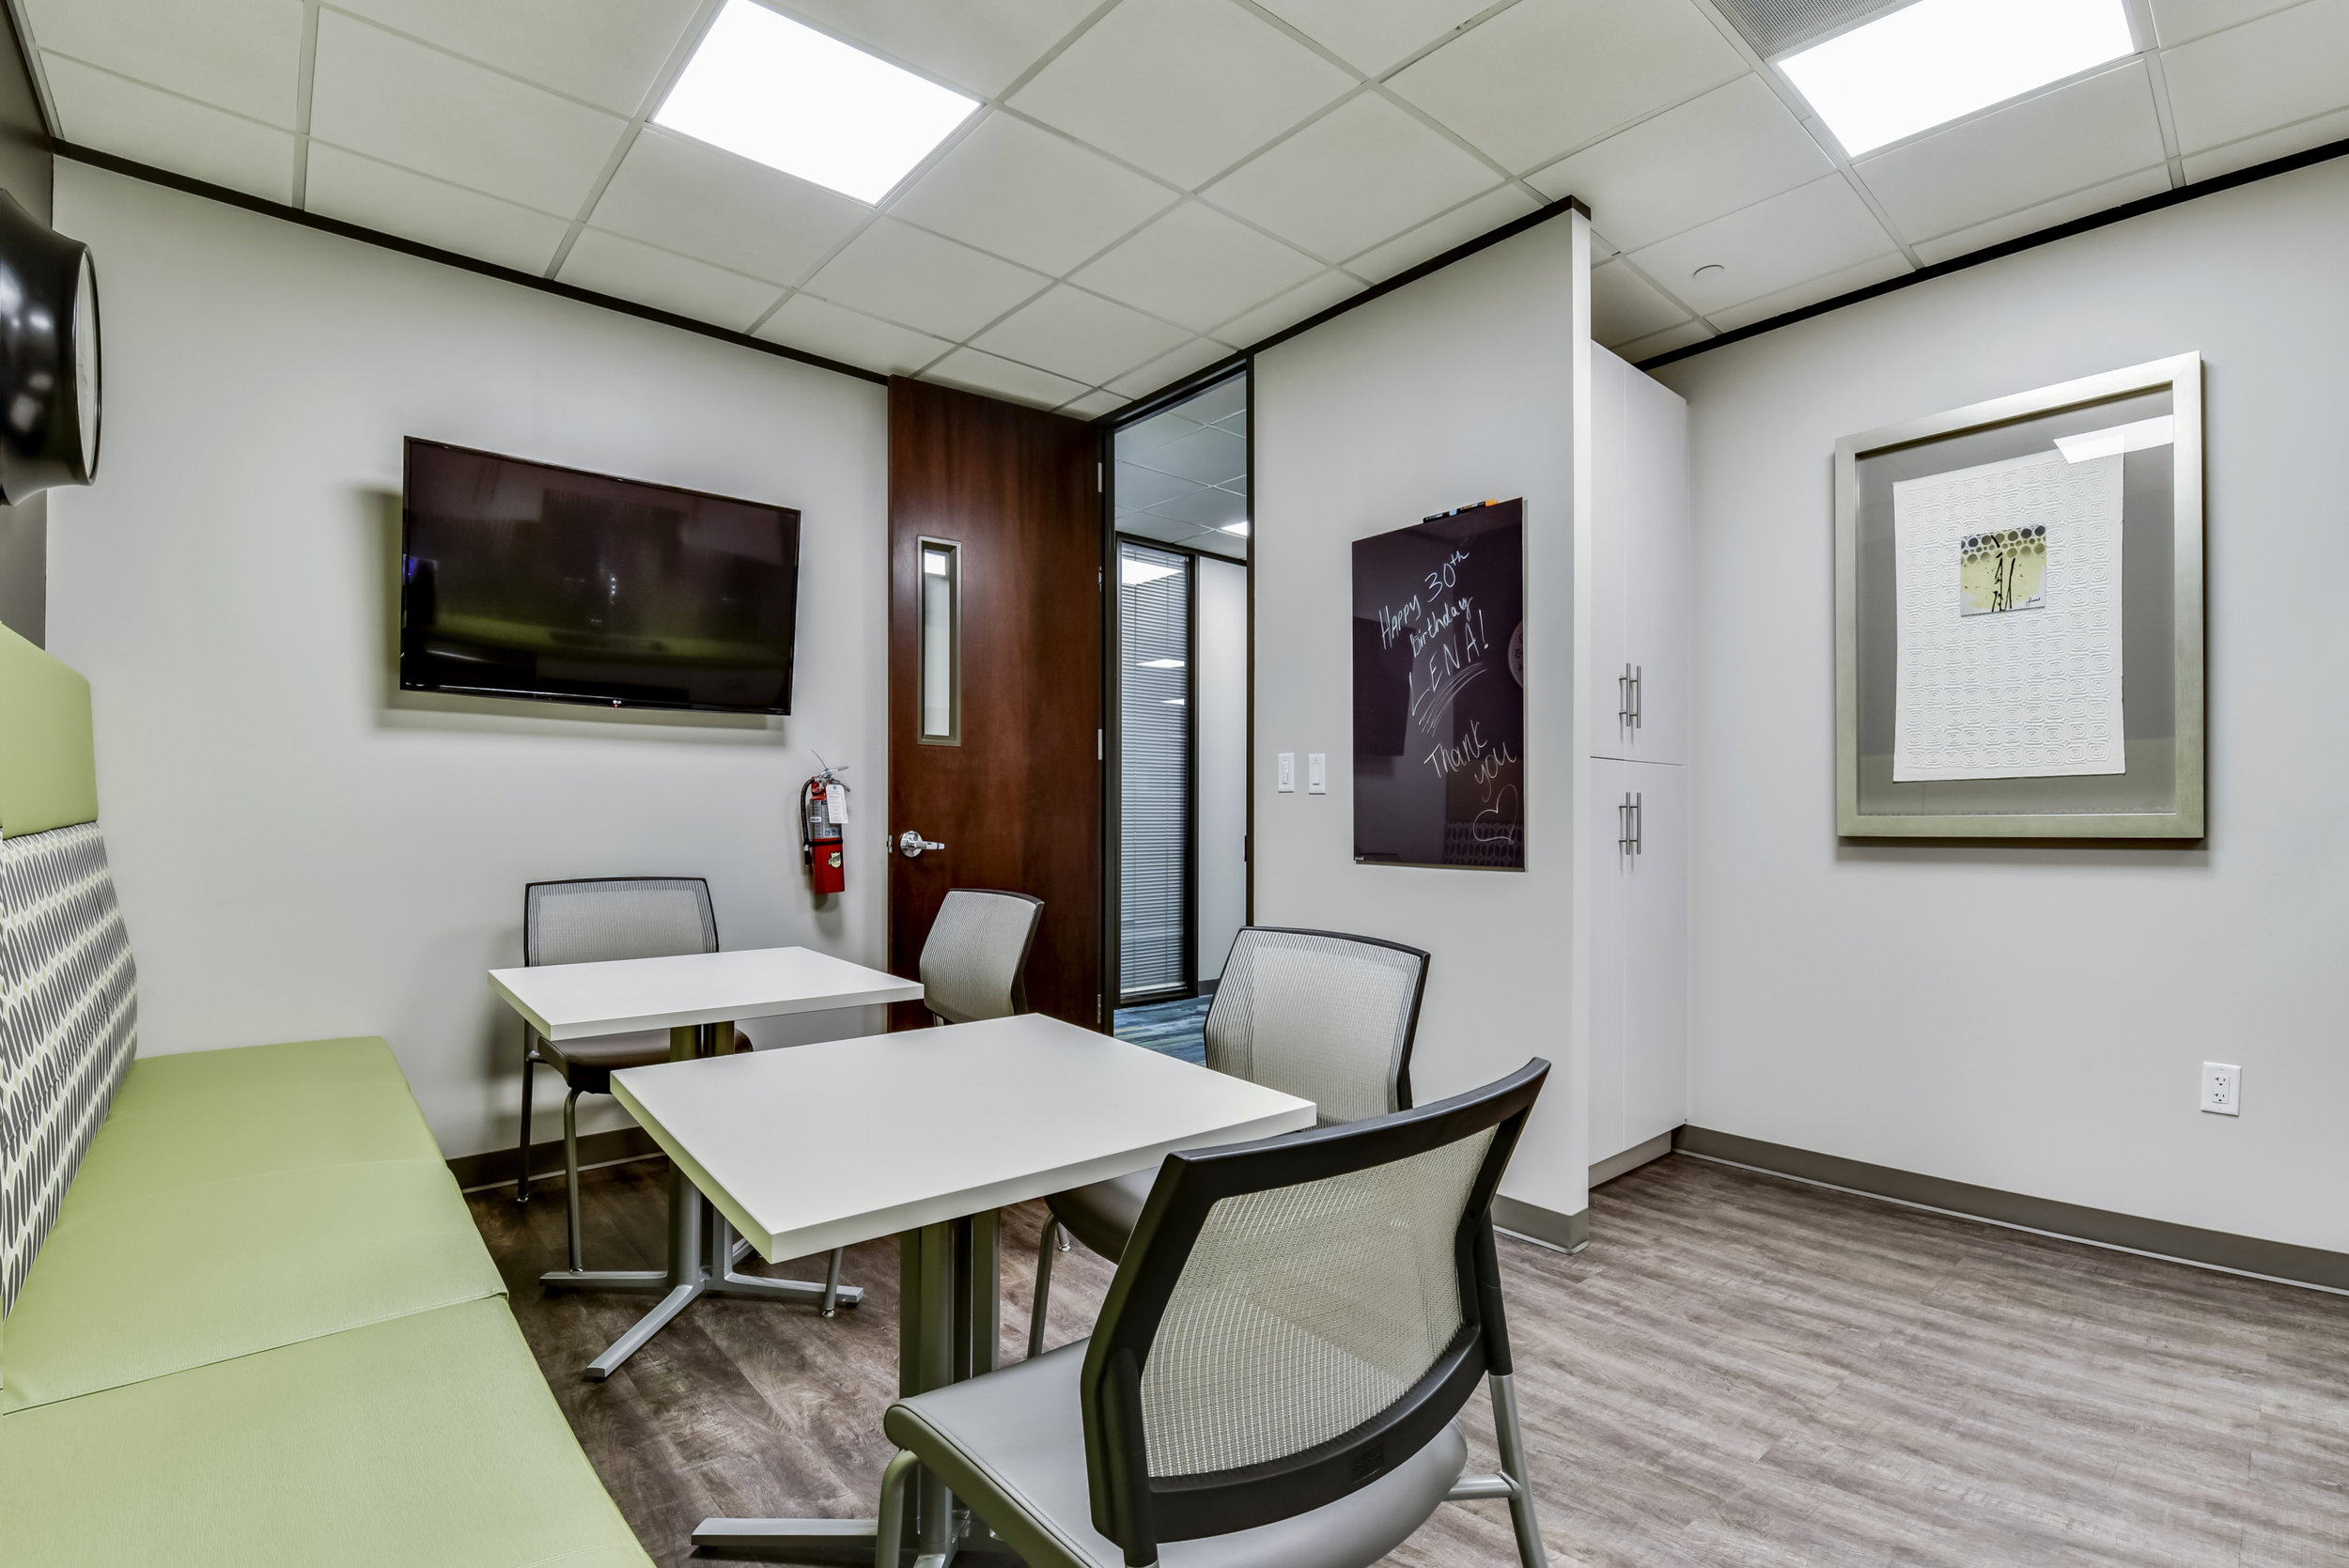 Commercial Office Break Room Design